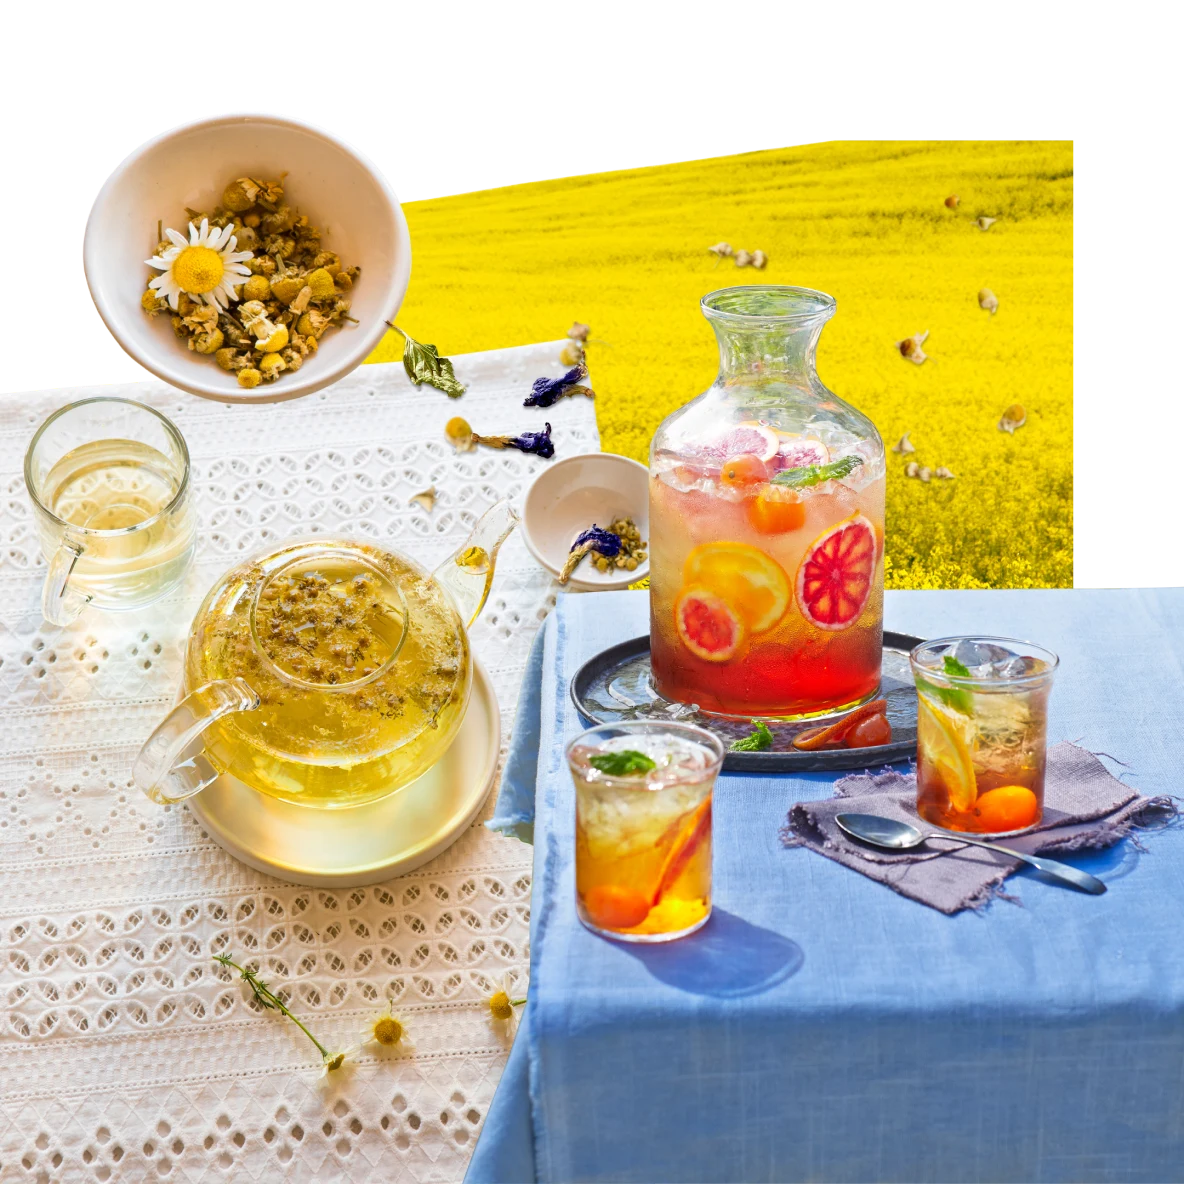 お茶に関するアイテムのコラージュ。青いクロスがかかったテーブルに乗った、シトラスアイスティー入りのカラフェとアイスティーが入ったグラス 2 個。ハーブティー入りのガラス製ティーポット、その横に並んだハーブティーの入ったグラスとハーブの入ったカップ。背景は一面に黄色い花が咲いている草原。